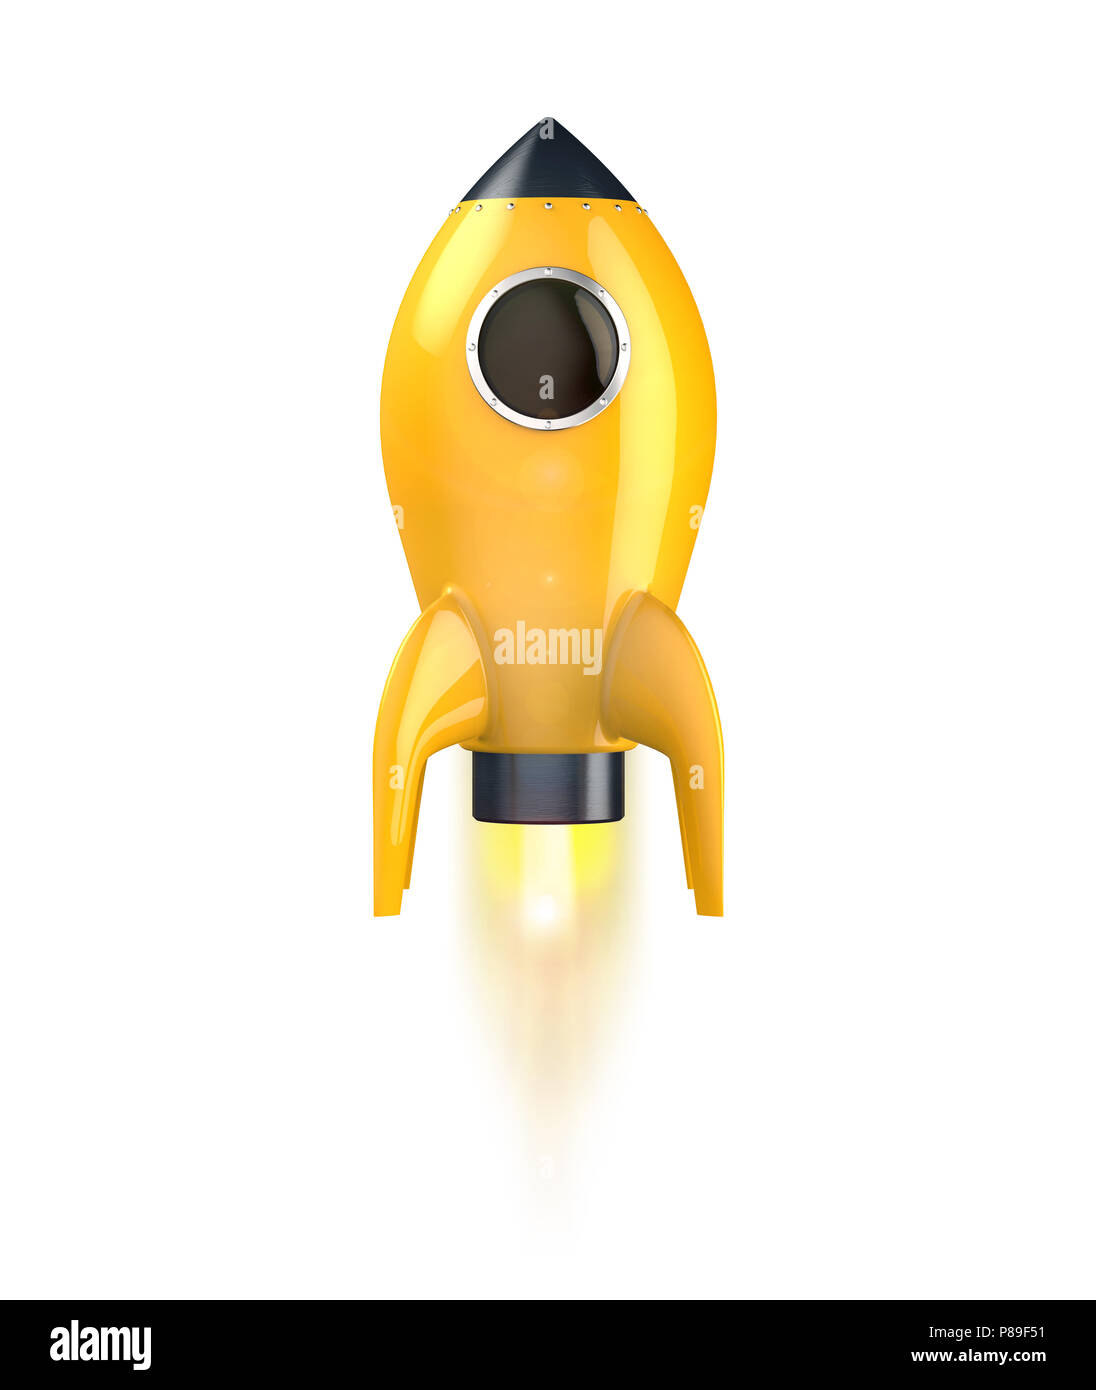 Yellow Rocket Start, isolated on white background. Stock Photo